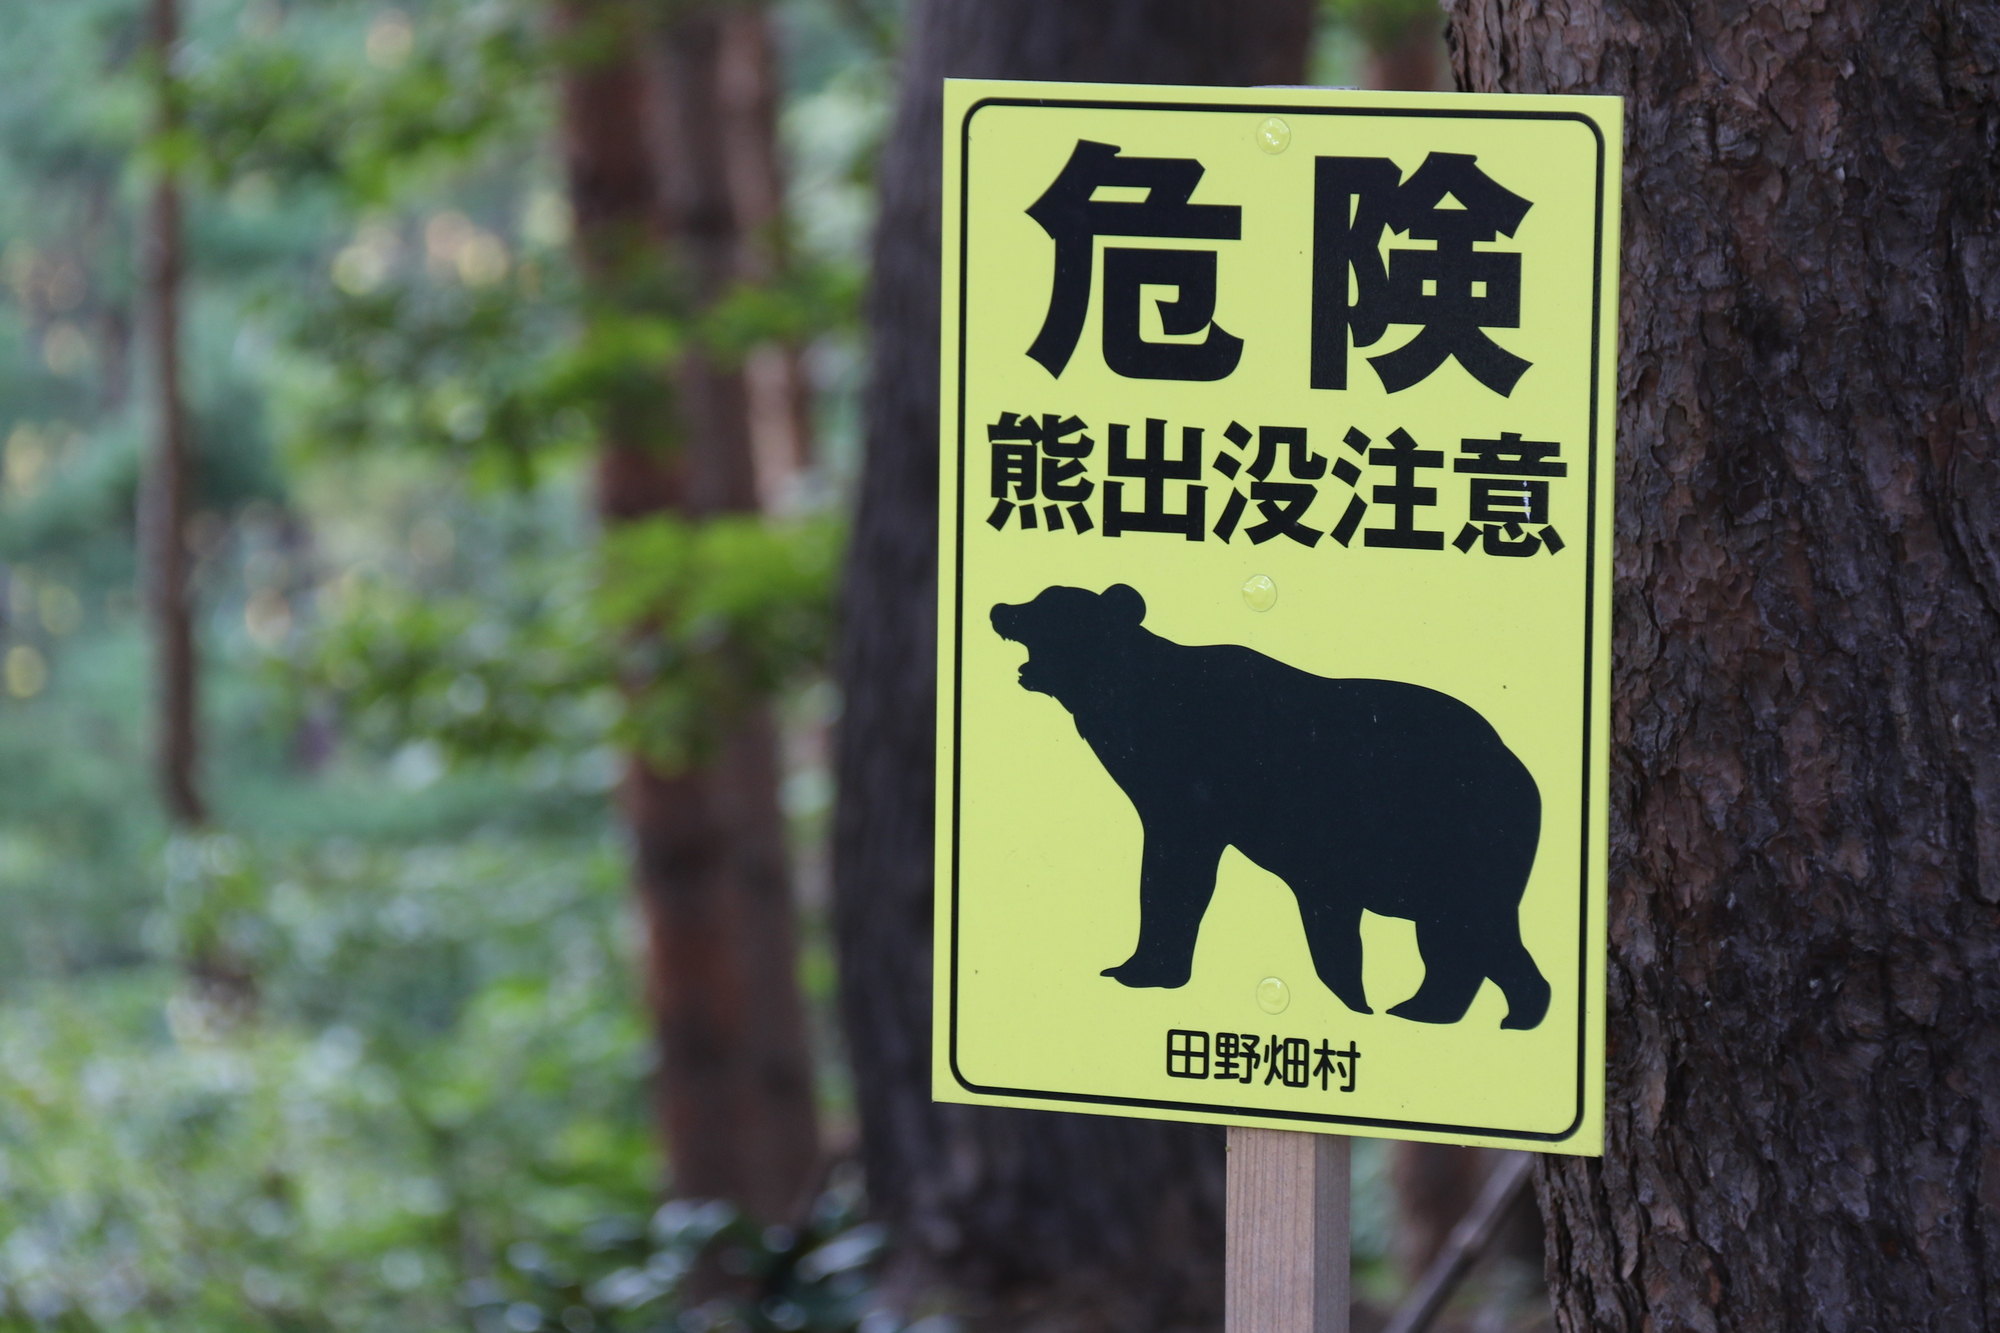 アウトドアで遭遇する危険生物とは？キャンプやハイキングにおける要注意動物対処法